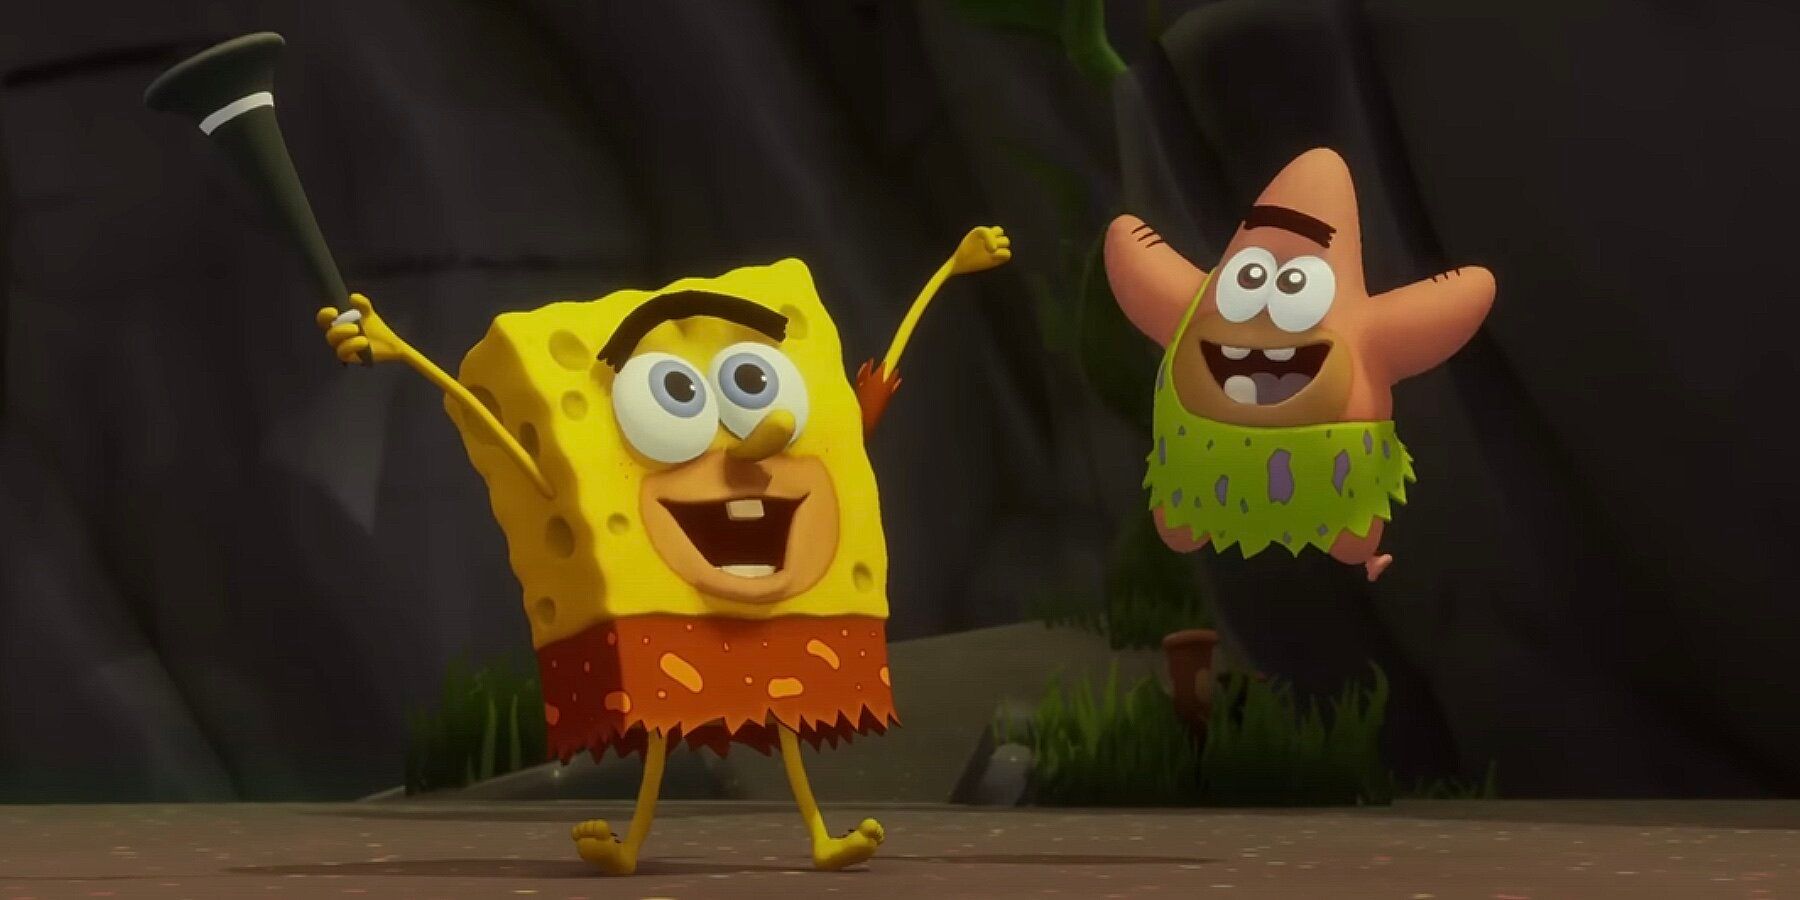 Prehistoric SpongeBob and Patrick rejoycing in a cutscene from SpongeBob SquarePants: The Cosmic Shake.